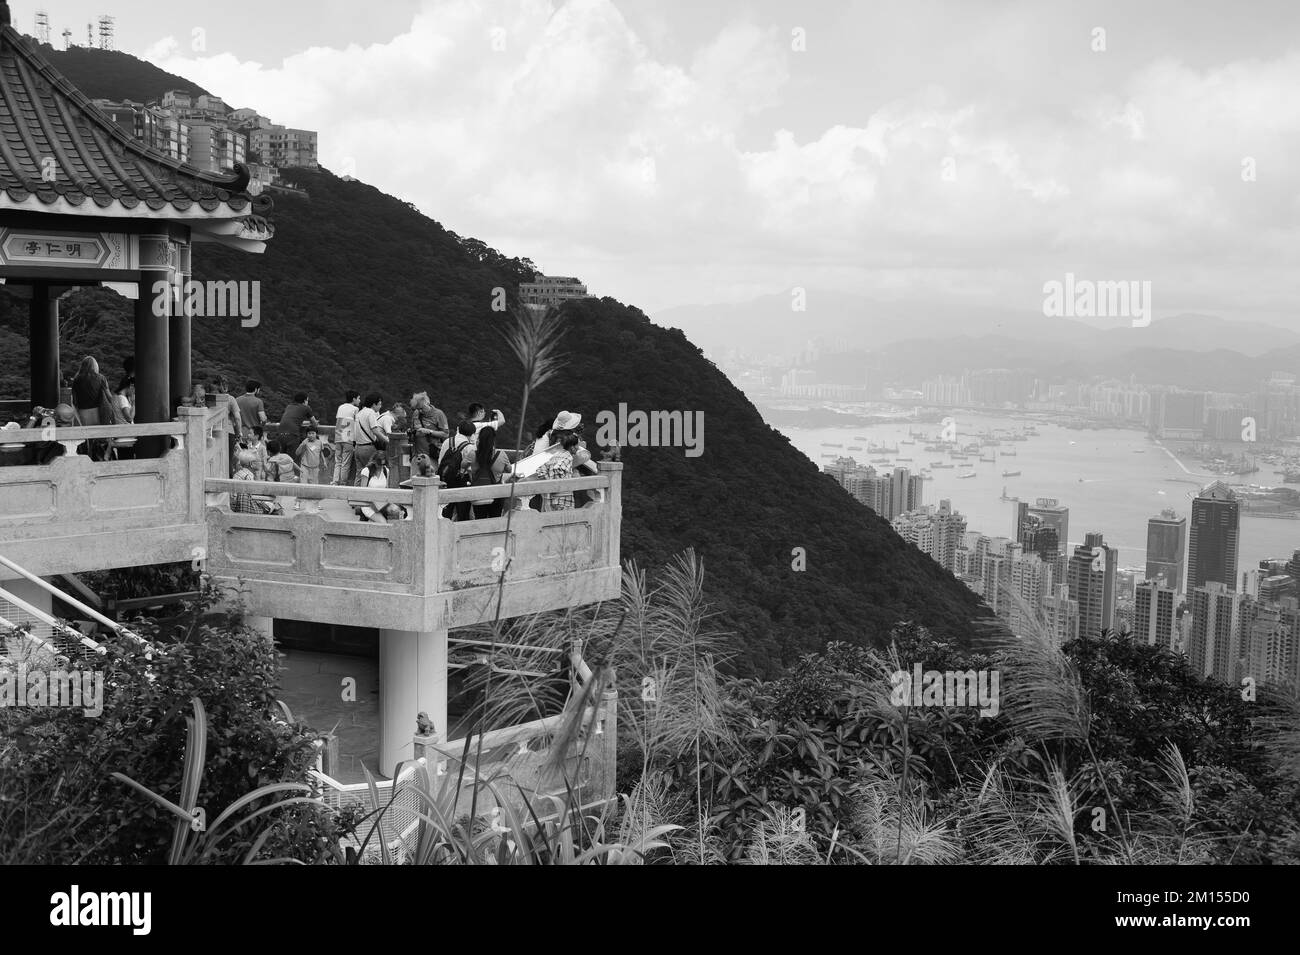 HONGKONG - 25. MAI: Blick vom Victoria Peak am 25. Mai 2012 in Hongkong, China. Hongkong, auch bekannt unter den Initialen H.K., befindet sich auf CH Stockfoto